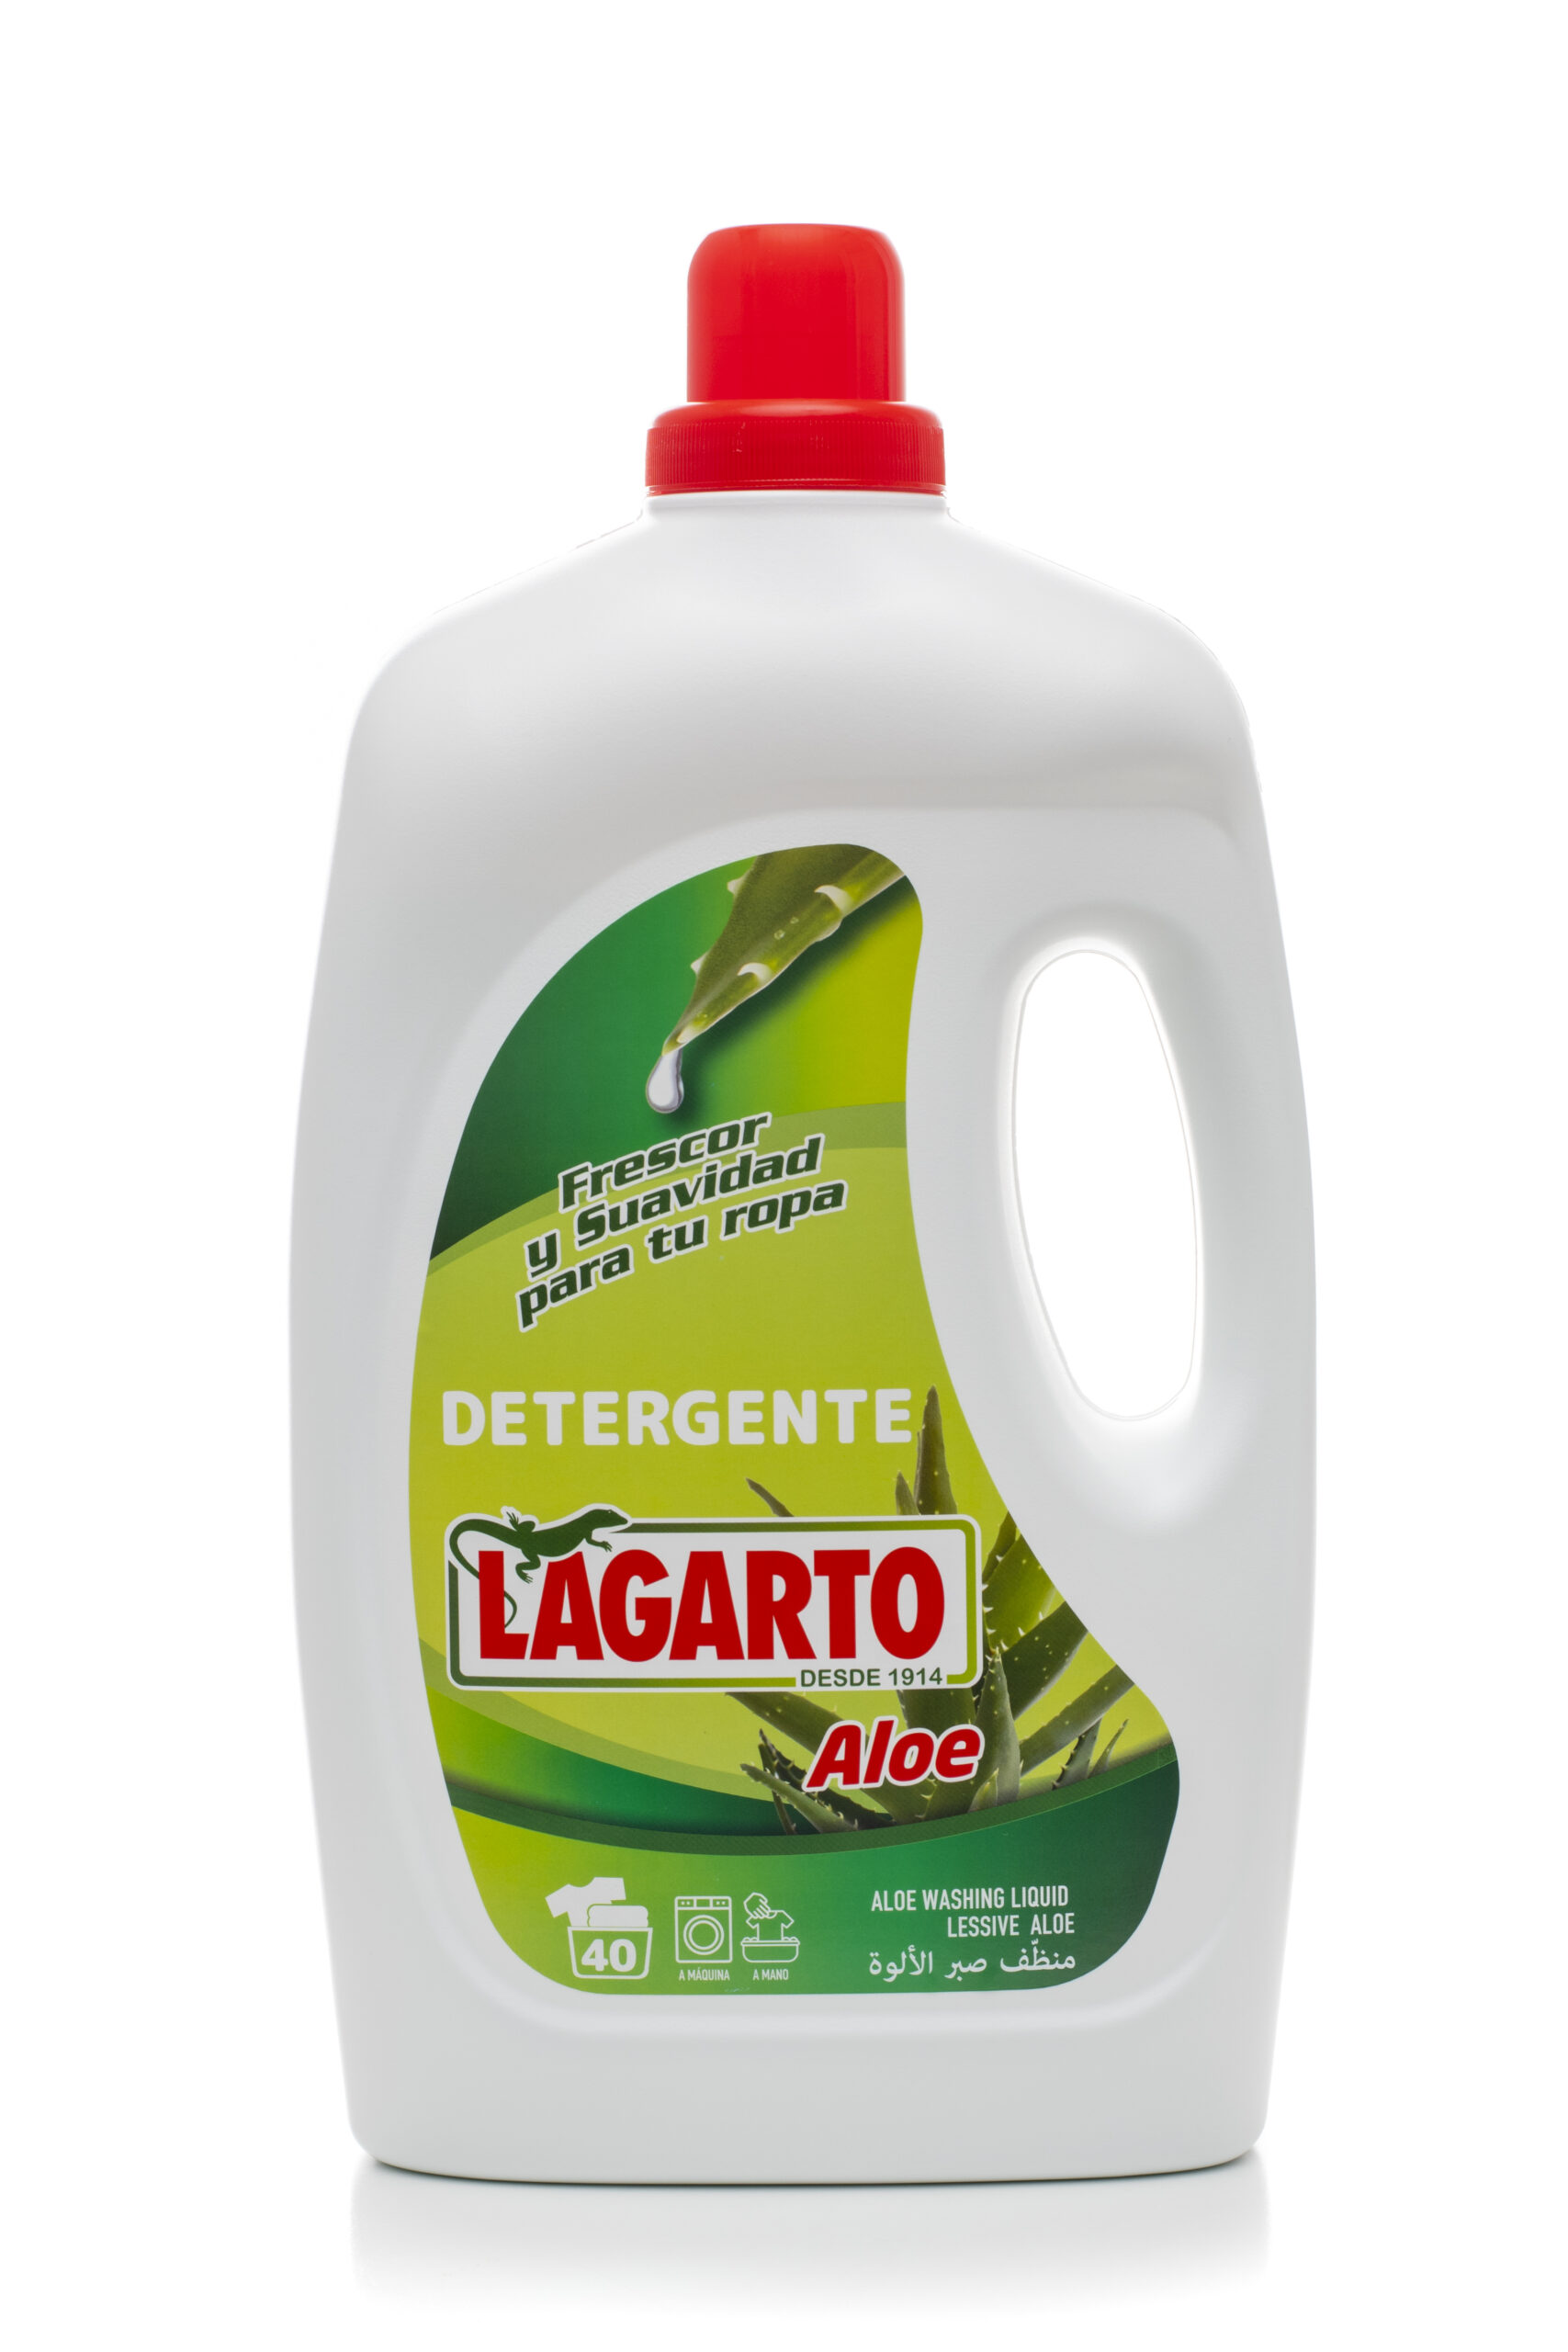 Detergente Lagarto Aloe 40 lavados